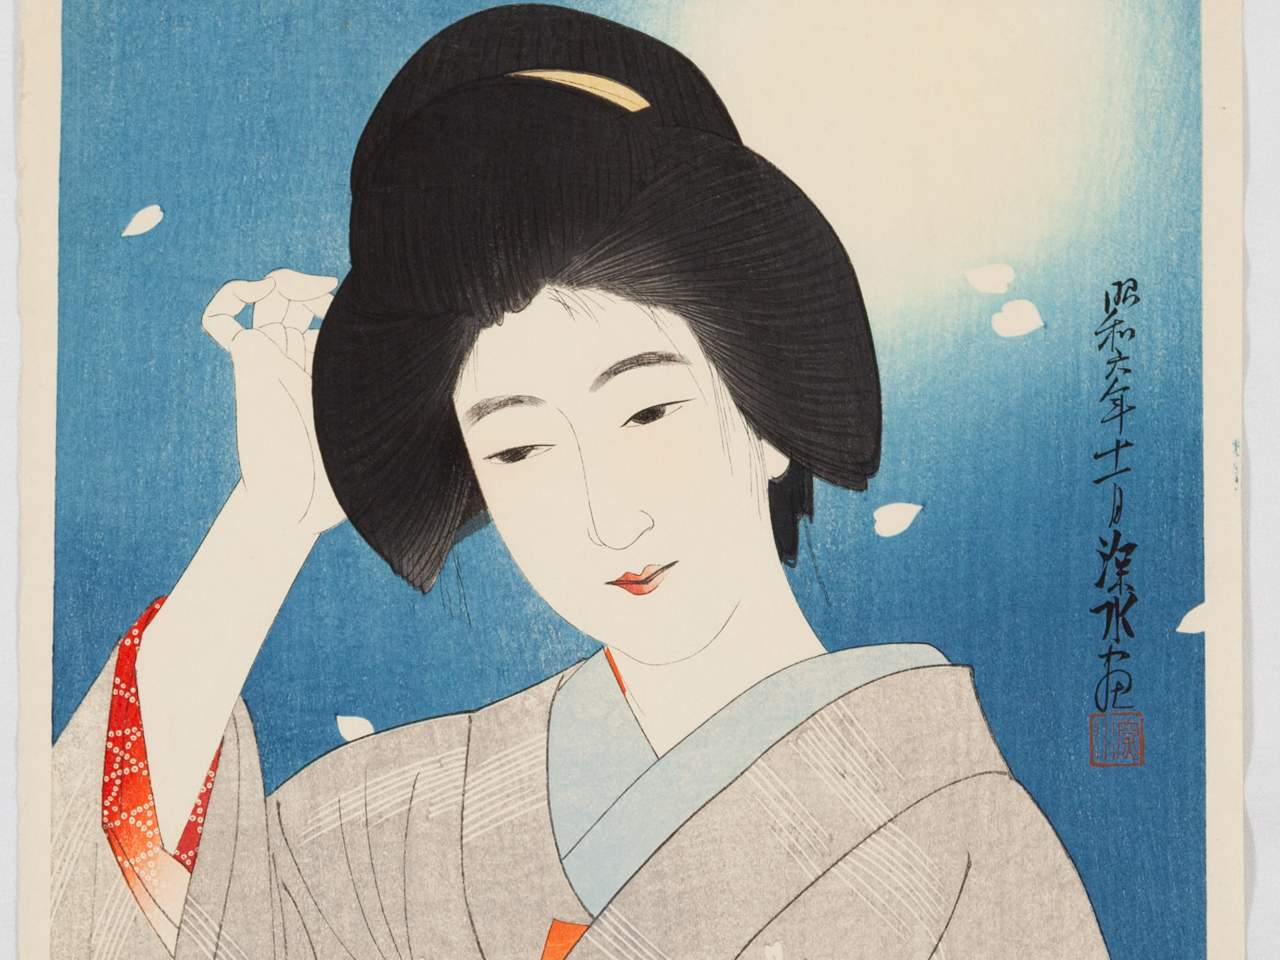 À Turin, la première exposition en Italie consacrée au shinhanga, la nouvelle gravure sur bois japonaise.